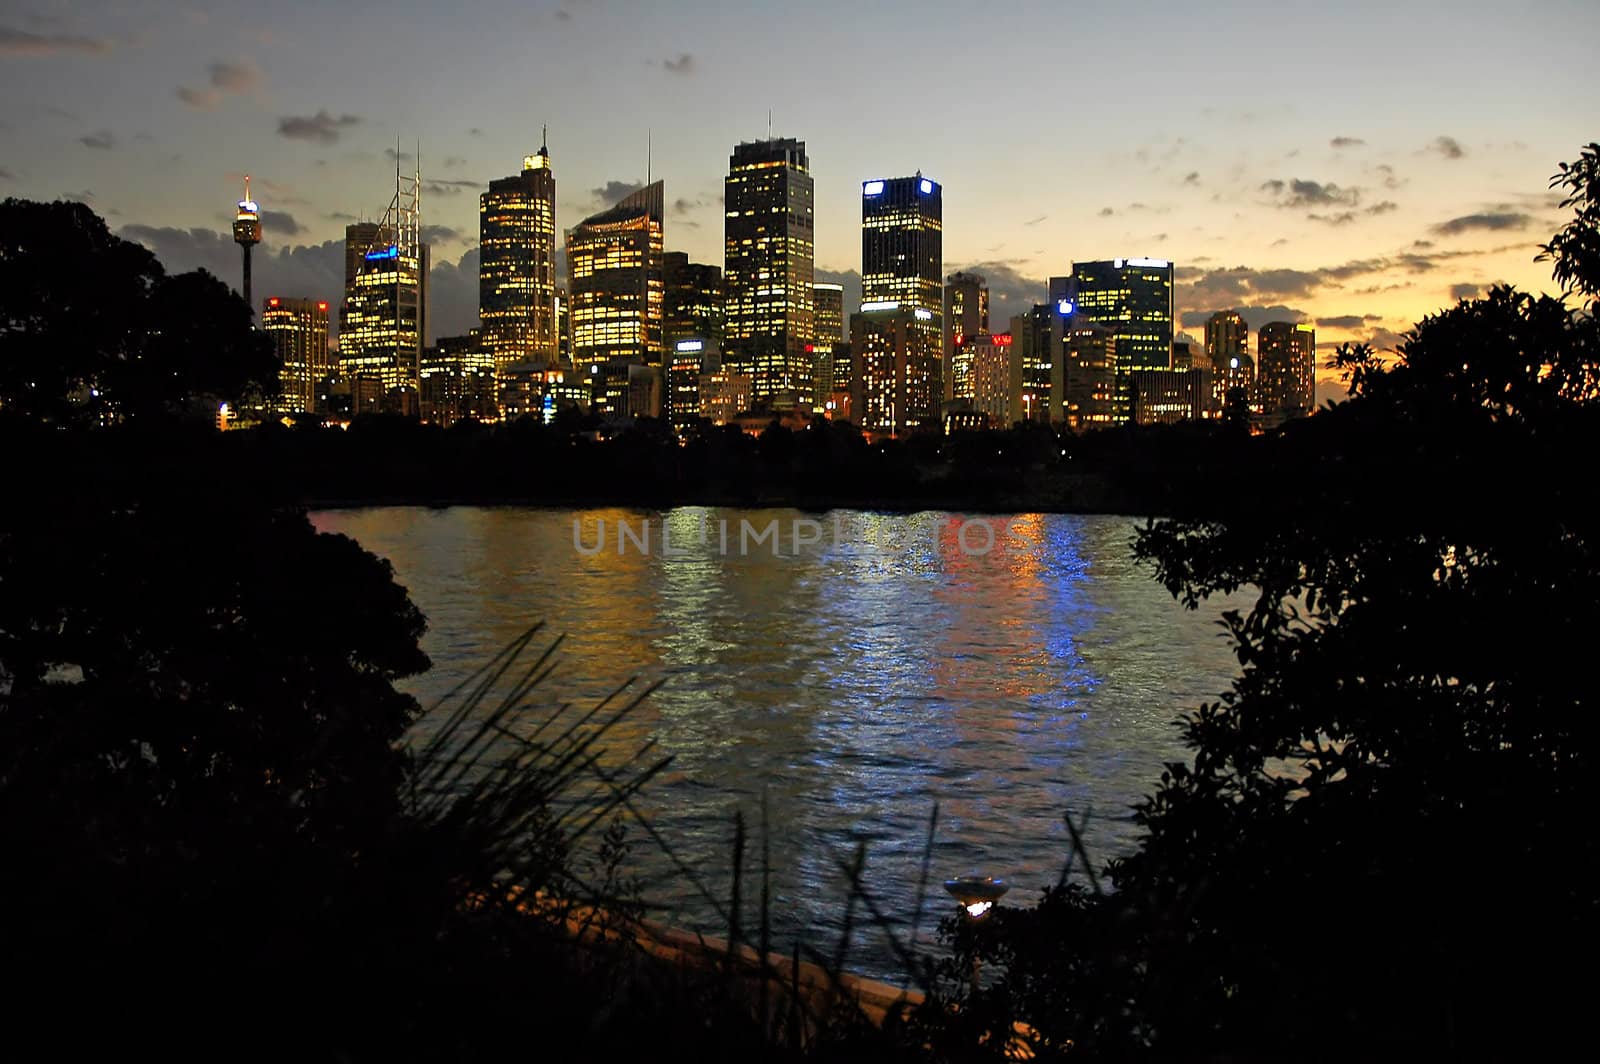 Sydney night scenery by rorem